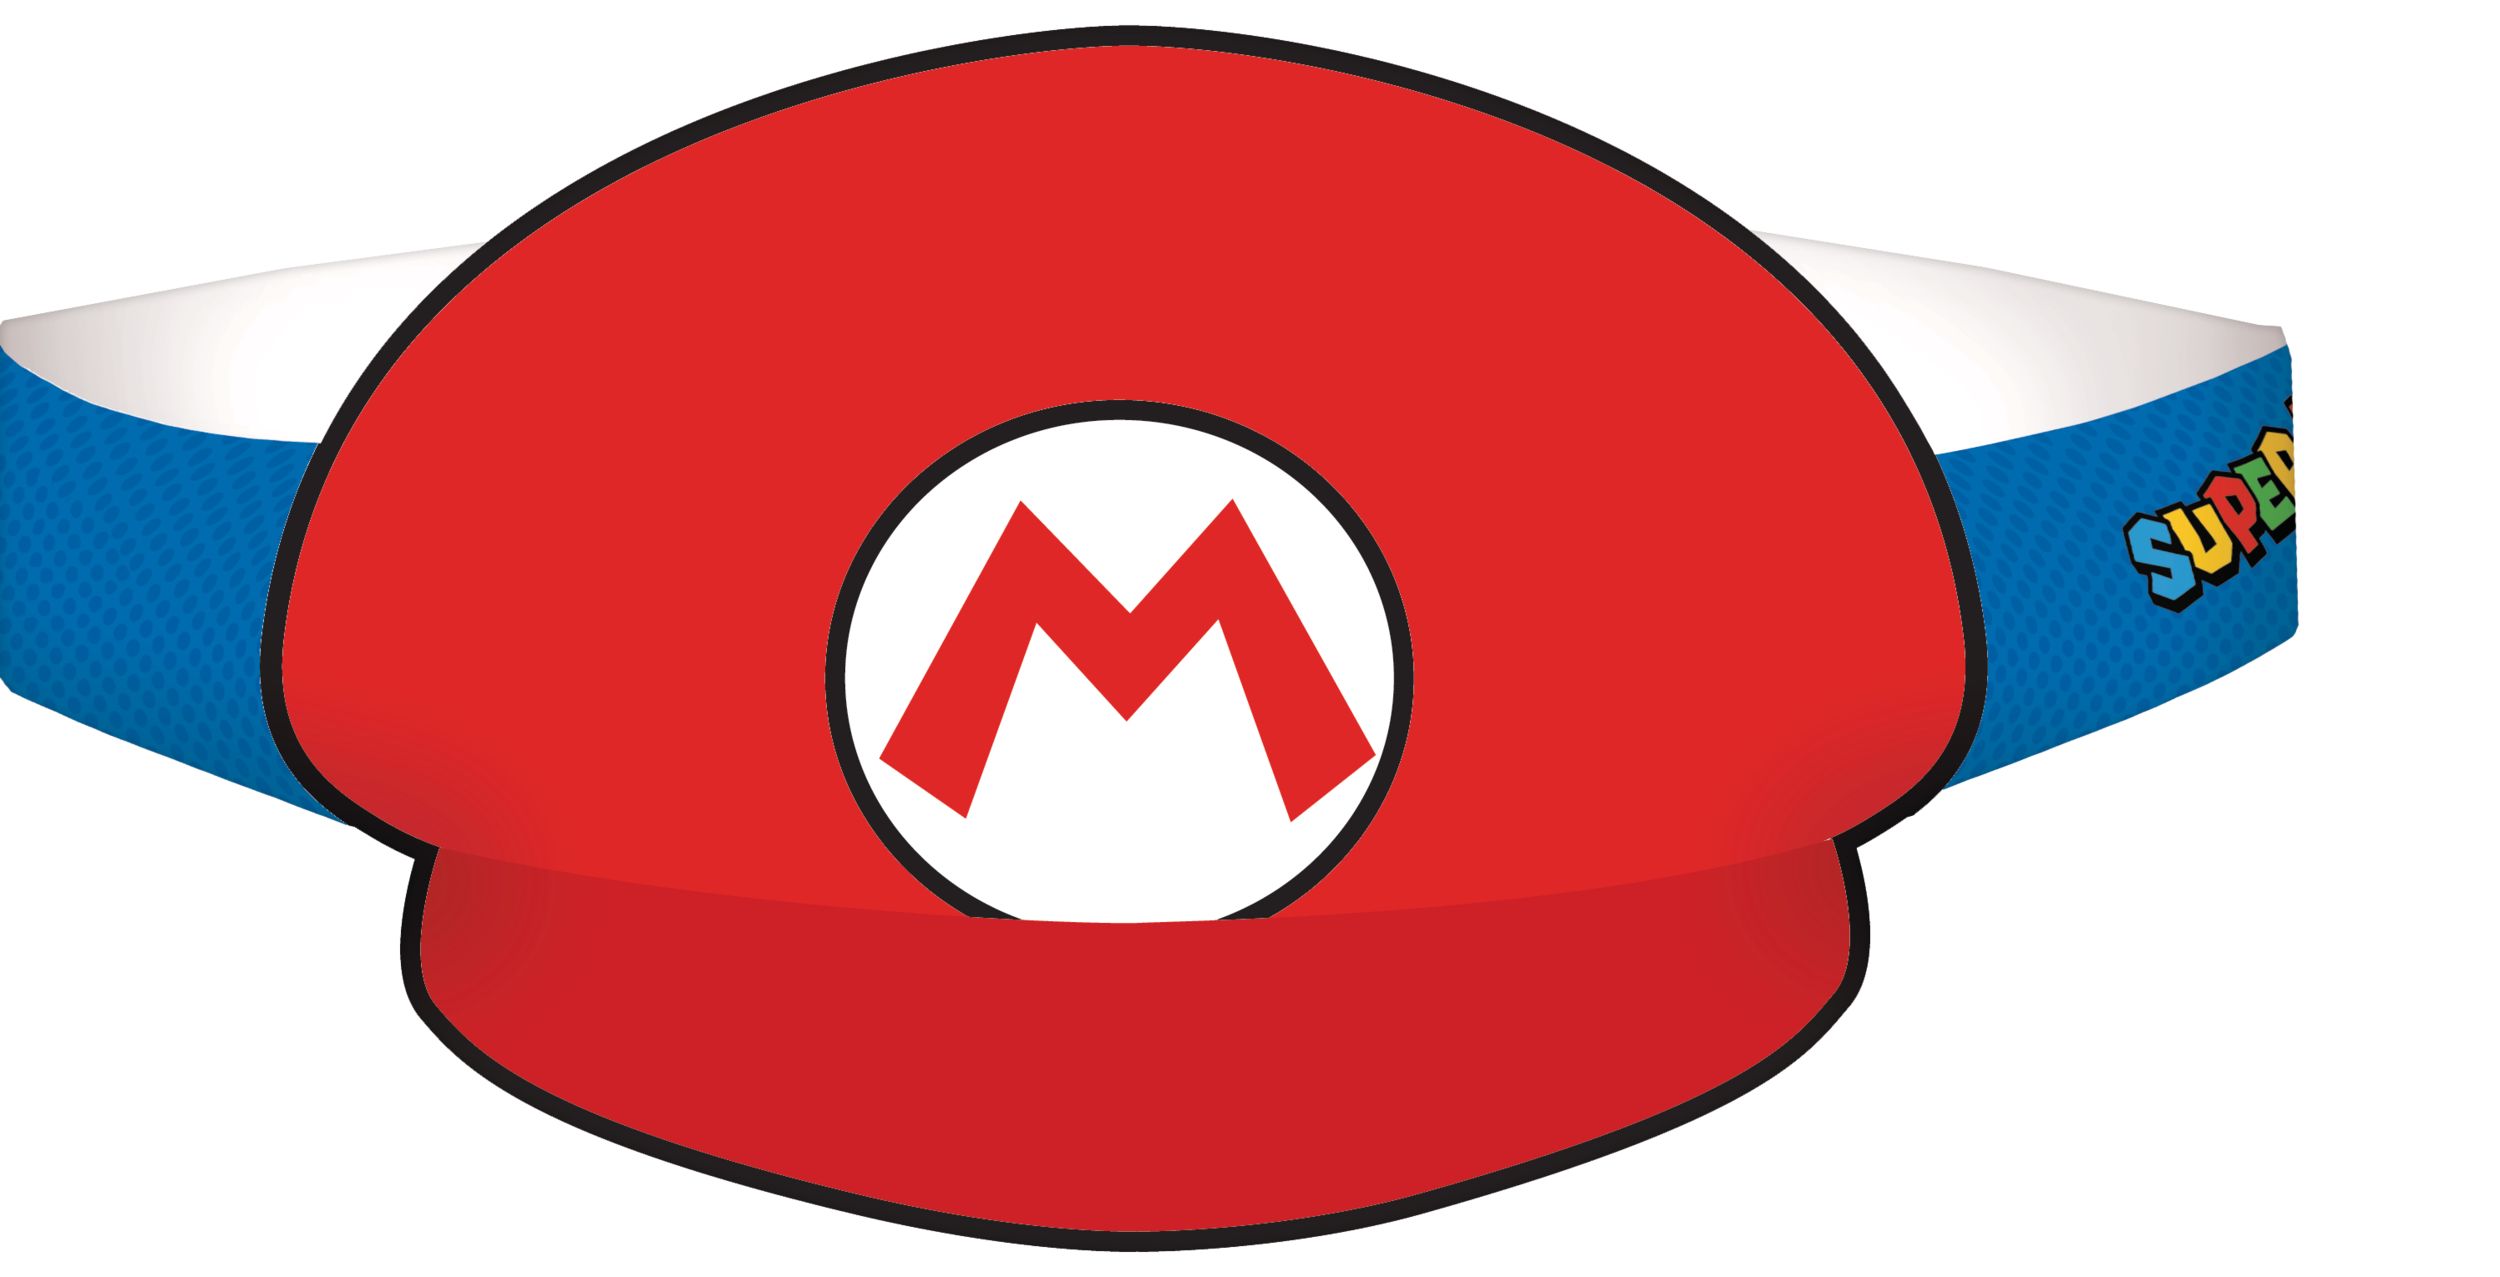 Luigi Cap - Nintendo Super Mario Bros.